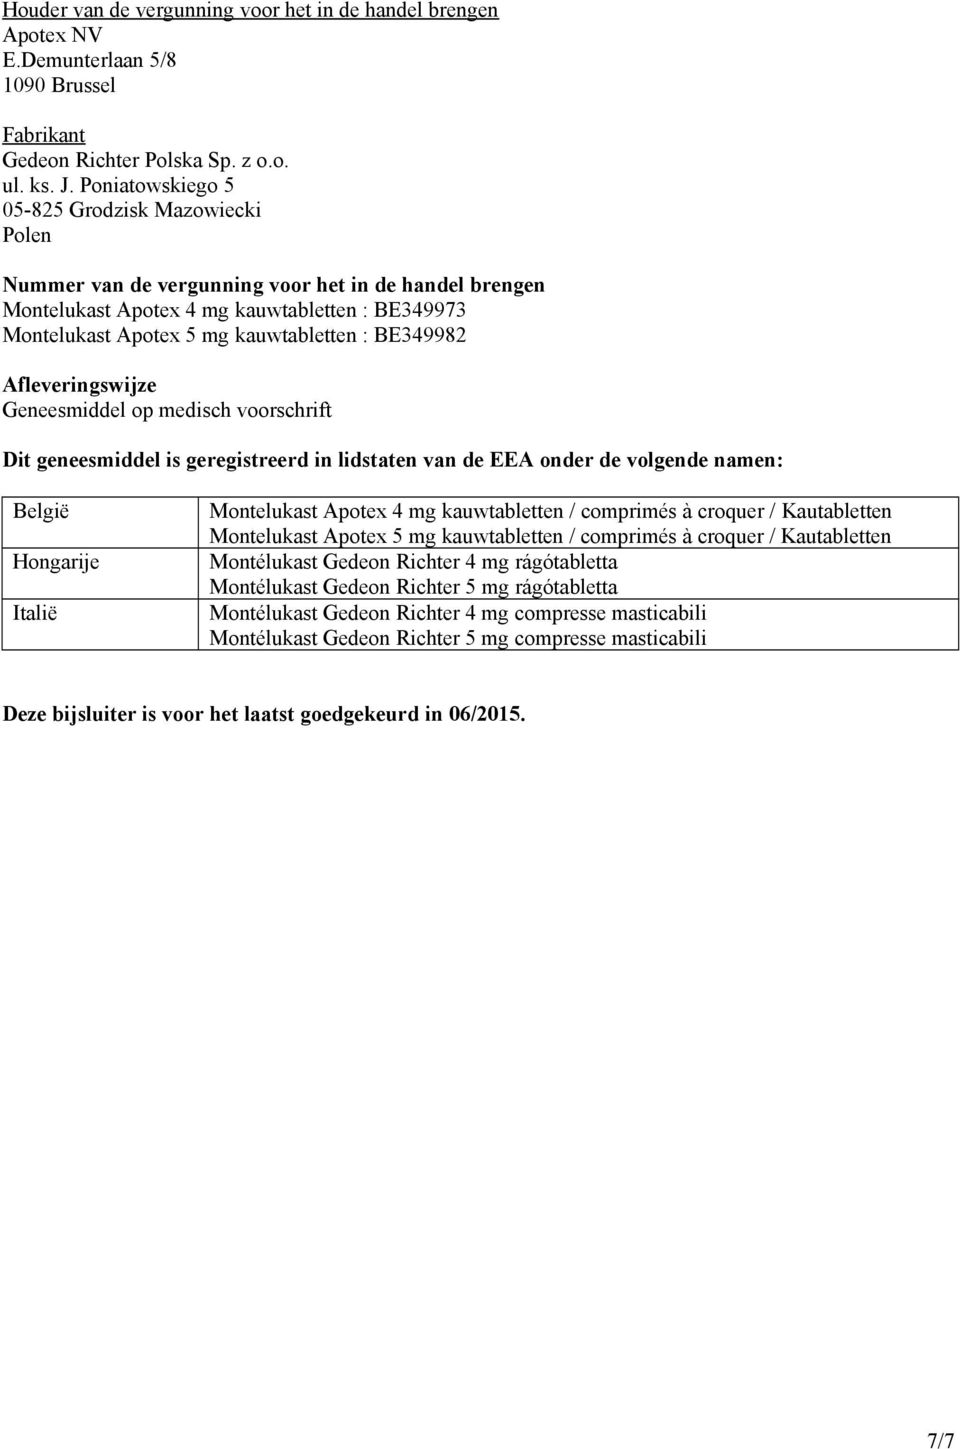 BE349982 Afleveringswijze Geneesmiddel op medisch voorschrift Dit geneesmiddel is geregistreerd in lidstaten van de EEA onder de volgende namen: België Hongarije Italië Montelukast Apotex 4 mg